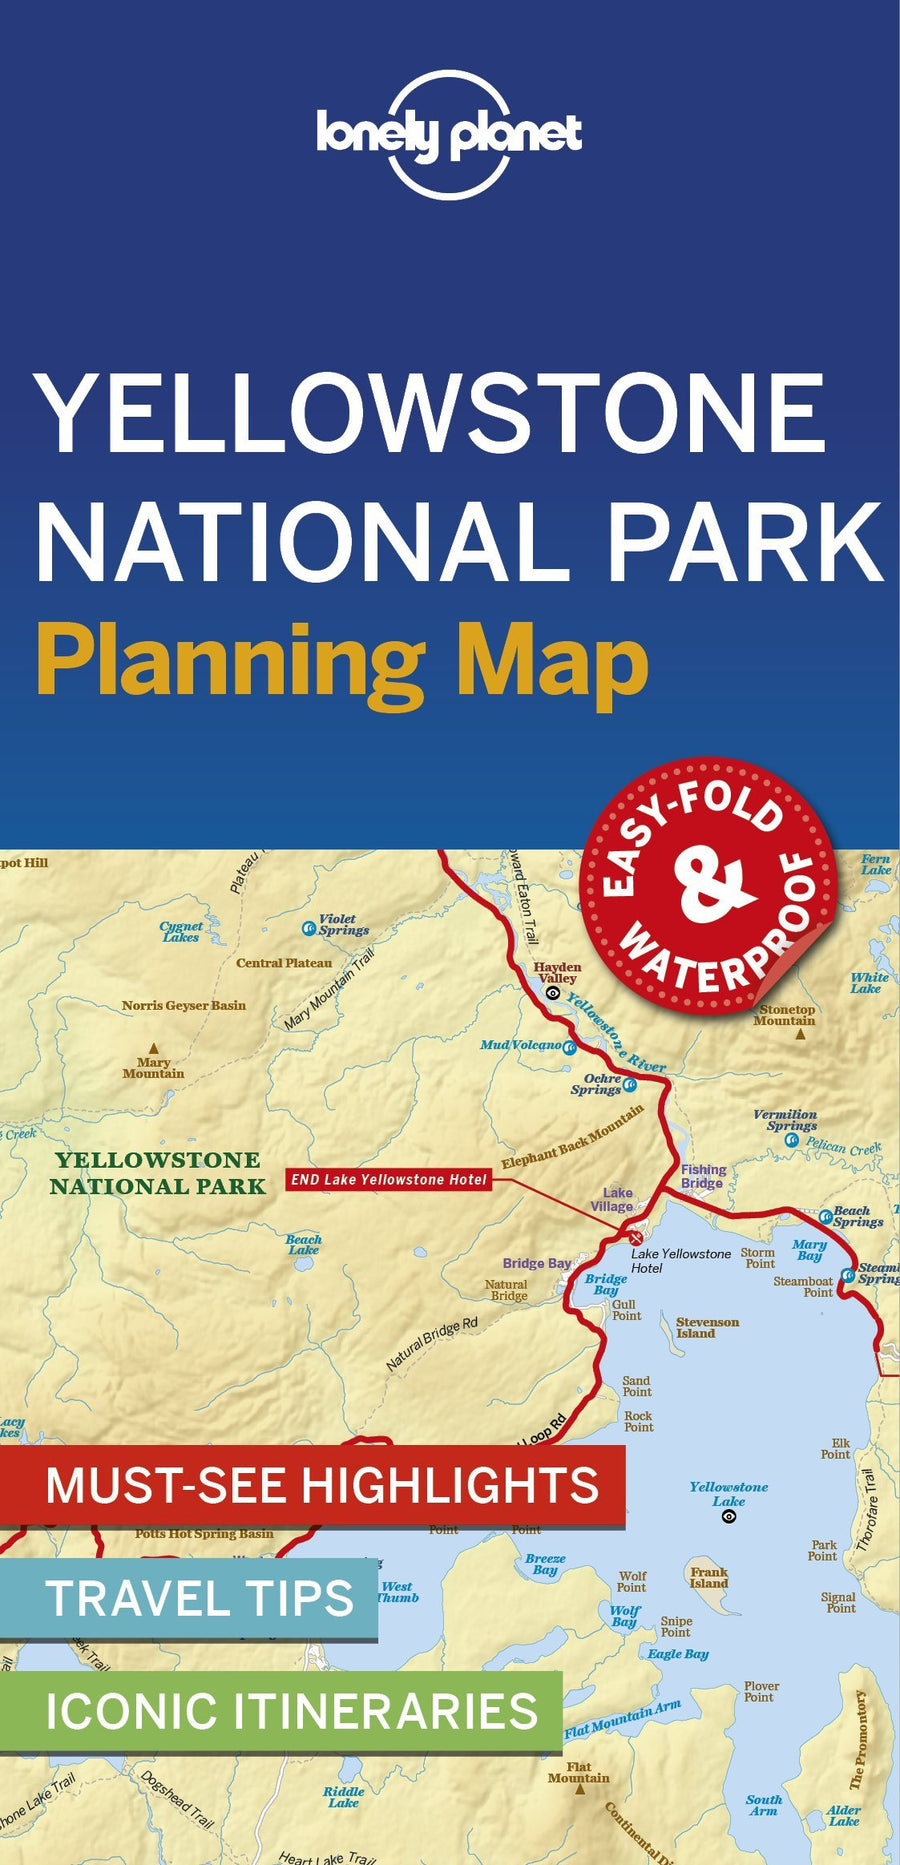 Carte de voyage (en anglais) - Yellowstone national park | Lonely Planet carte pliée Lonely Planet 